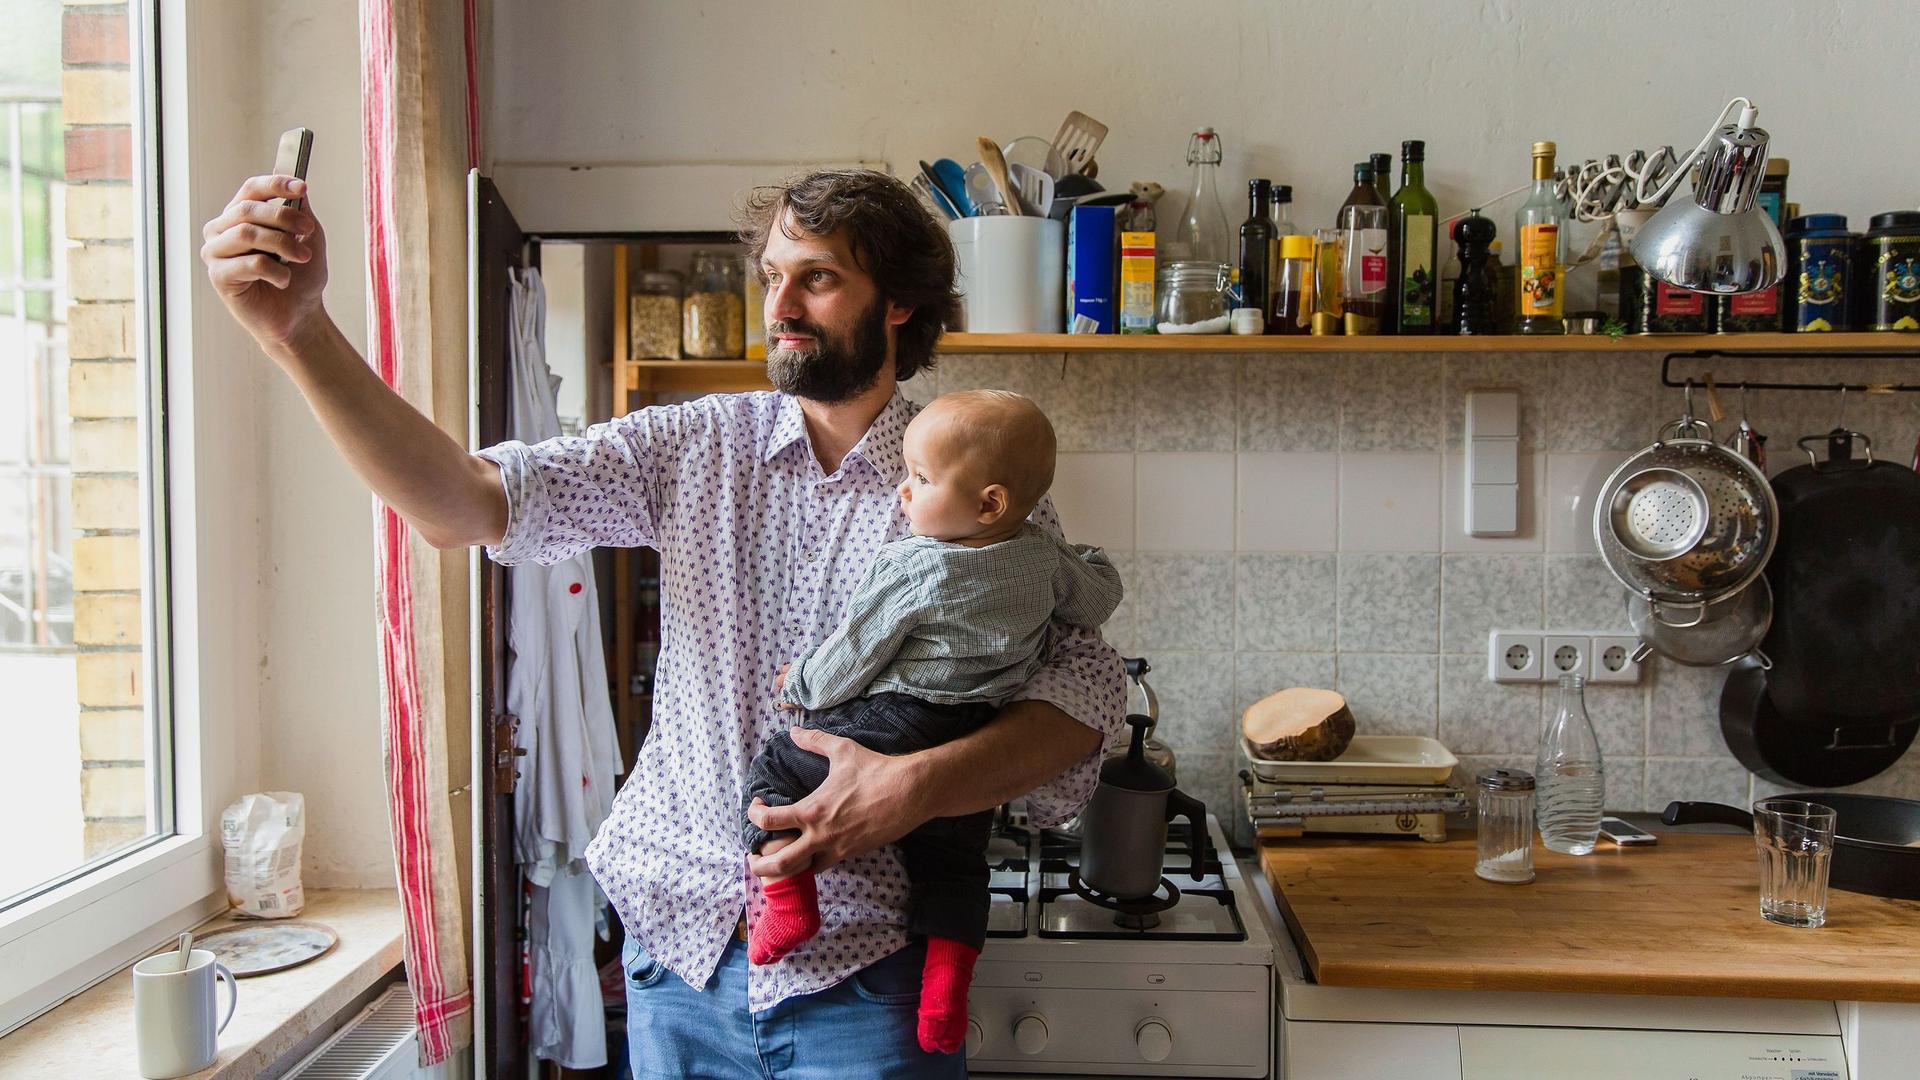 Ein junger Vater mit Baby auf dem Arm steht in einer Küche und macht ein Selfie von sich und seinem Kind.